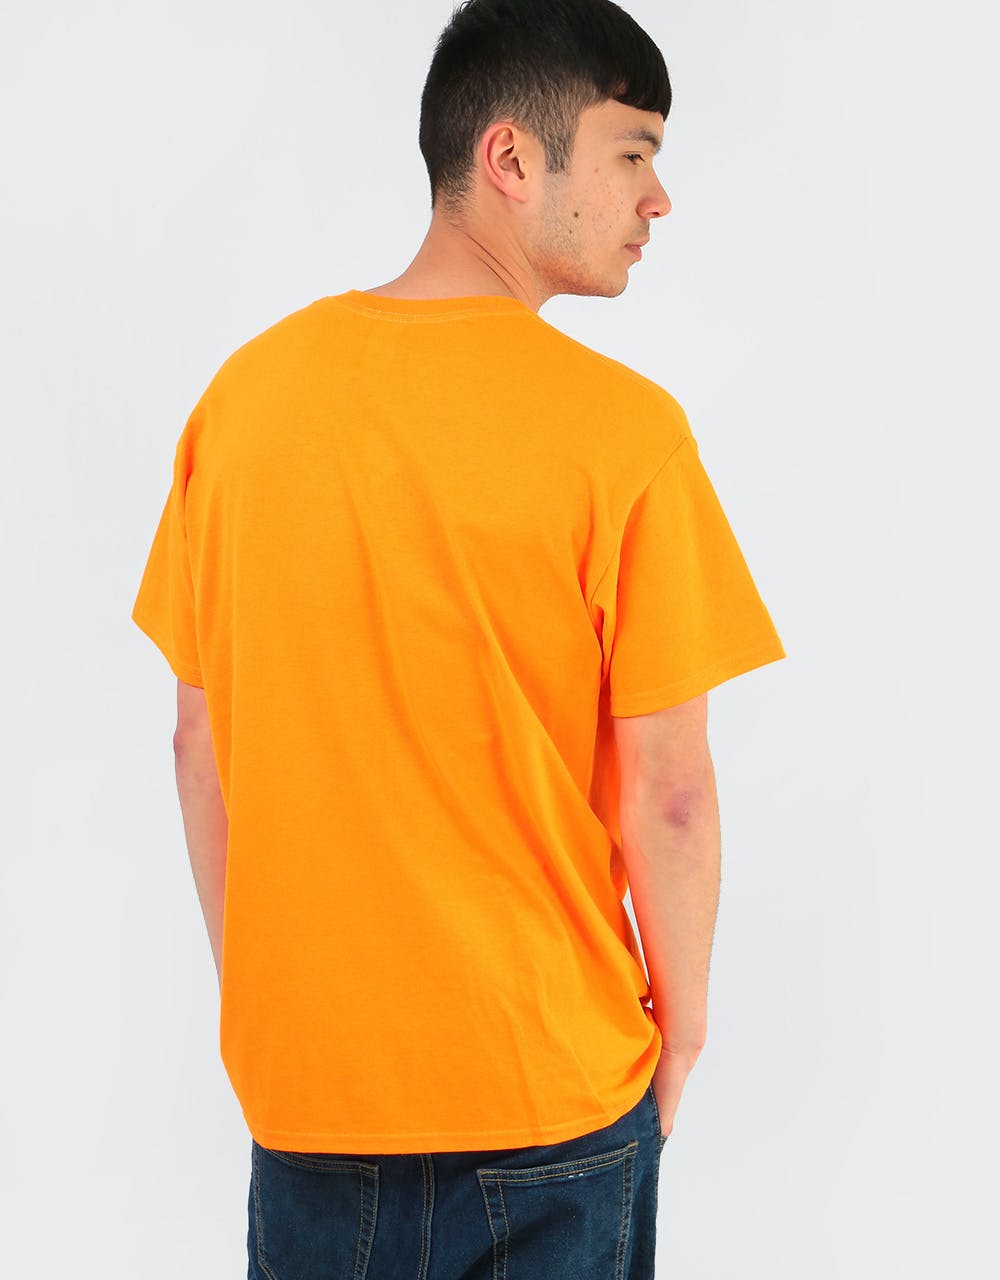 Thrasher Tiki T-Shirt - Safety Orange